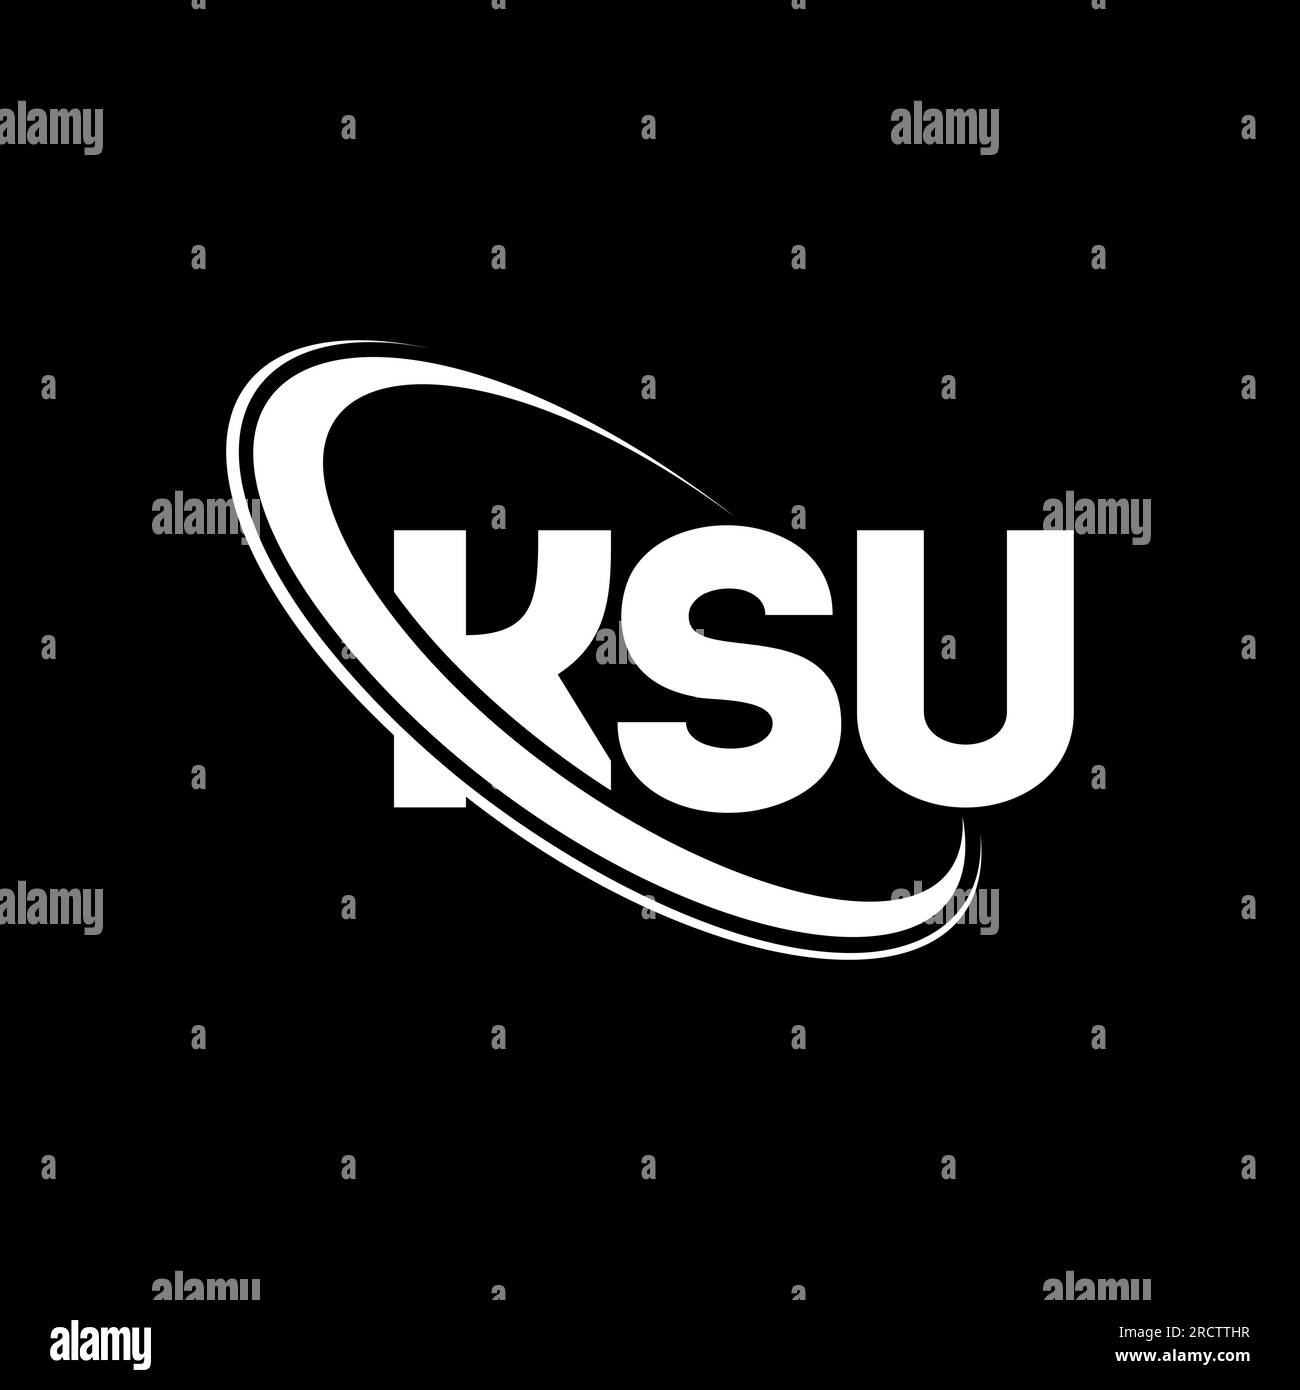 File:KSU logo.png - Wikipedia